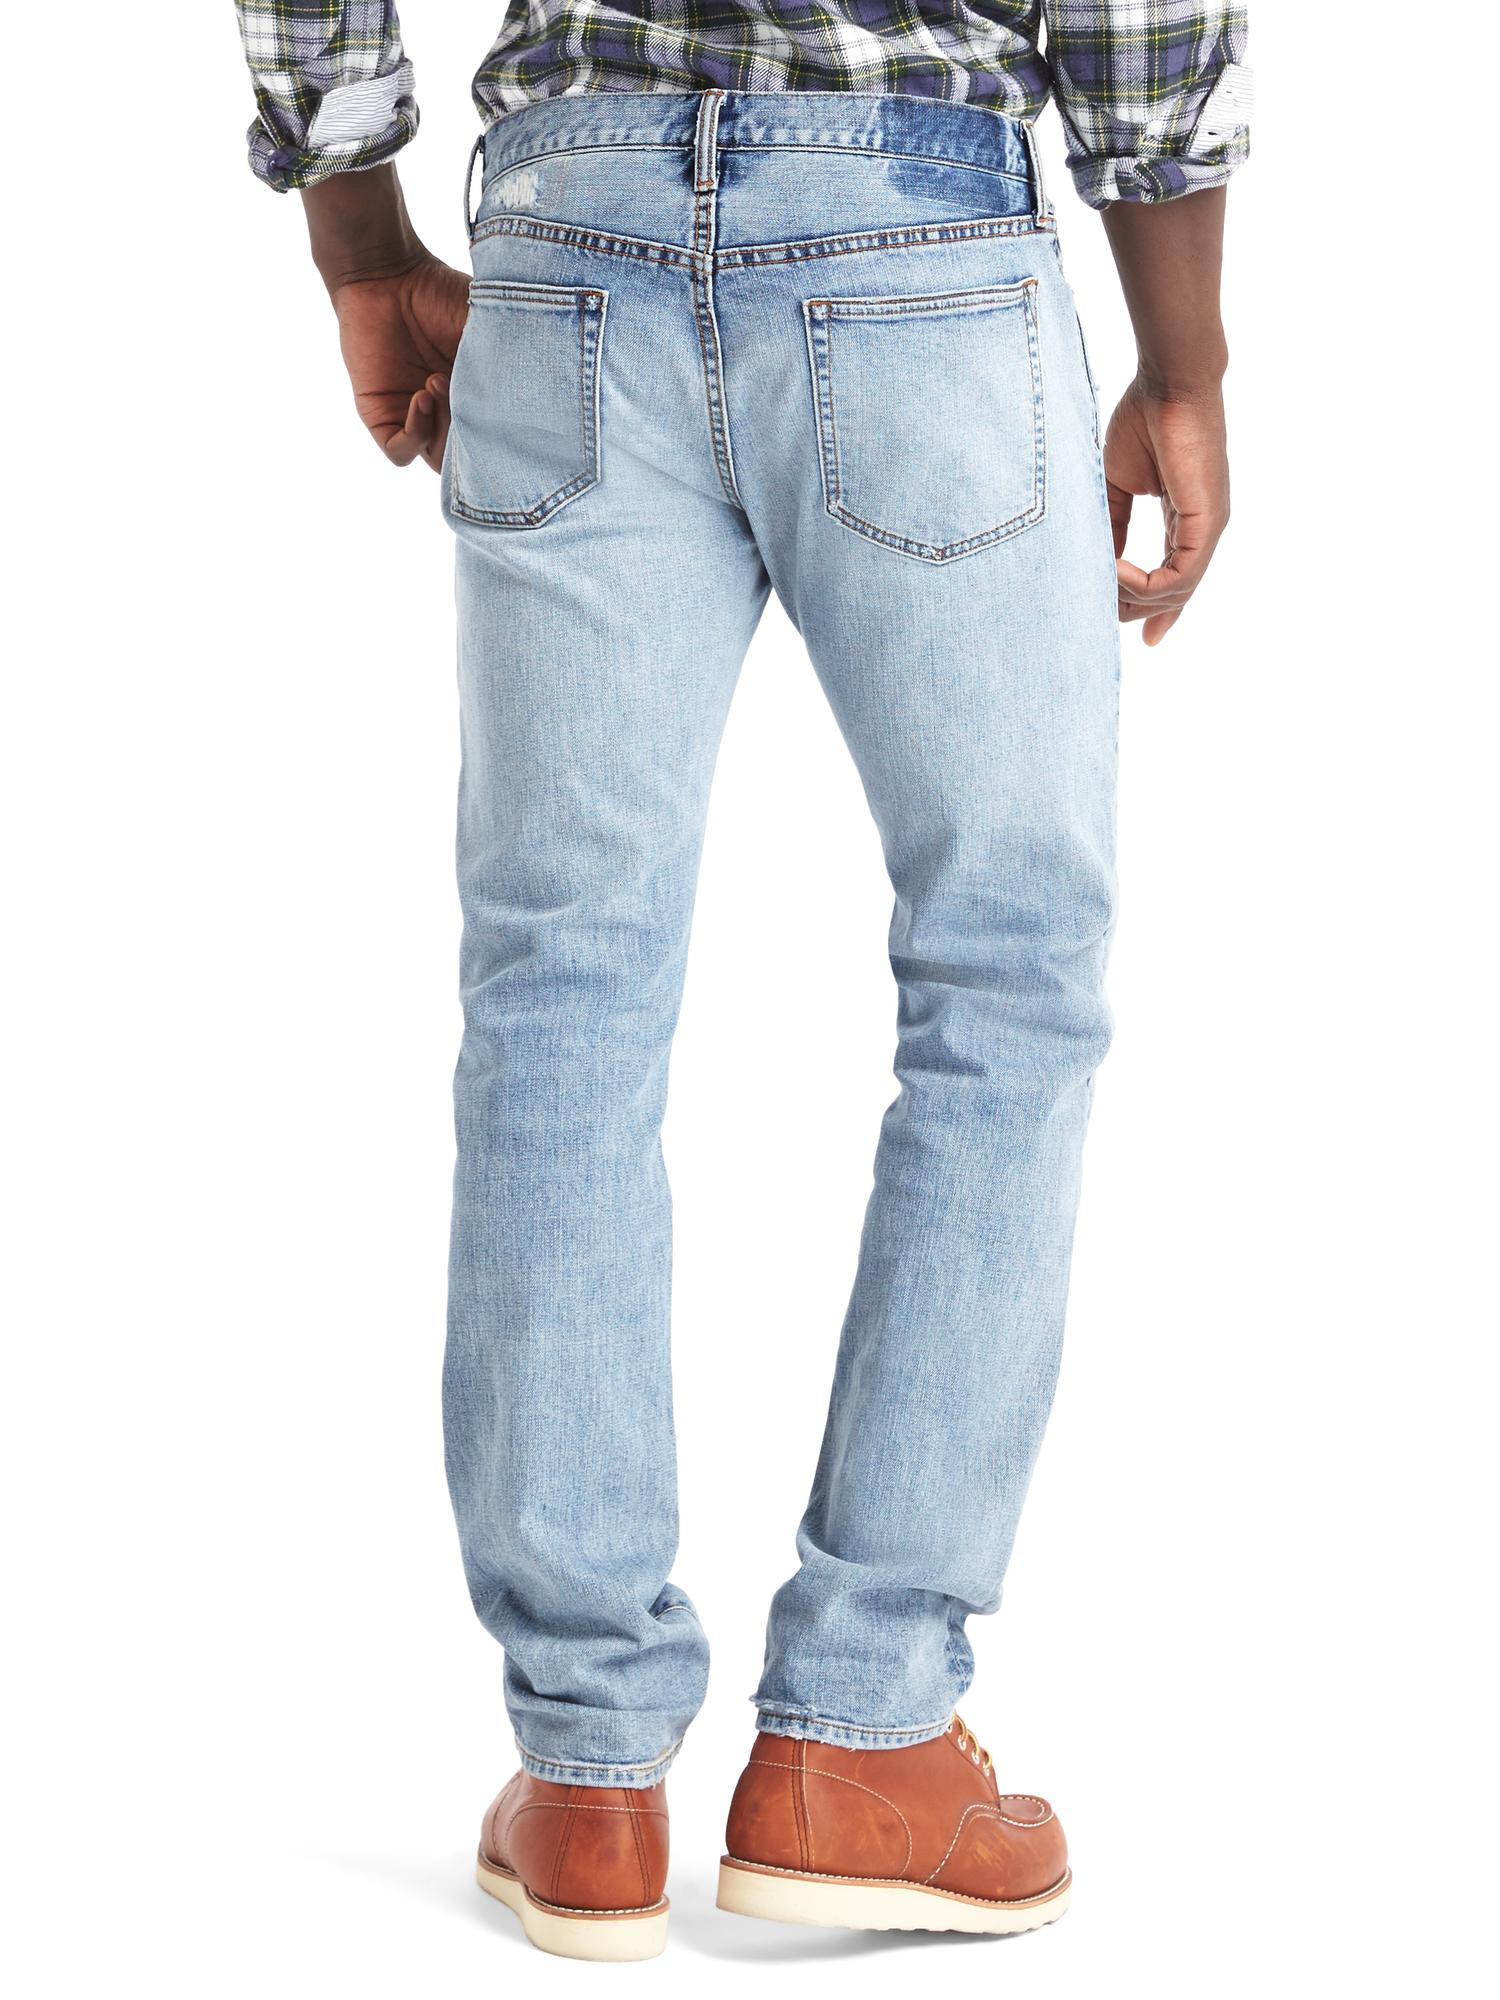 Gap x GQ Michael Bastian distressed slim jeans | Gap